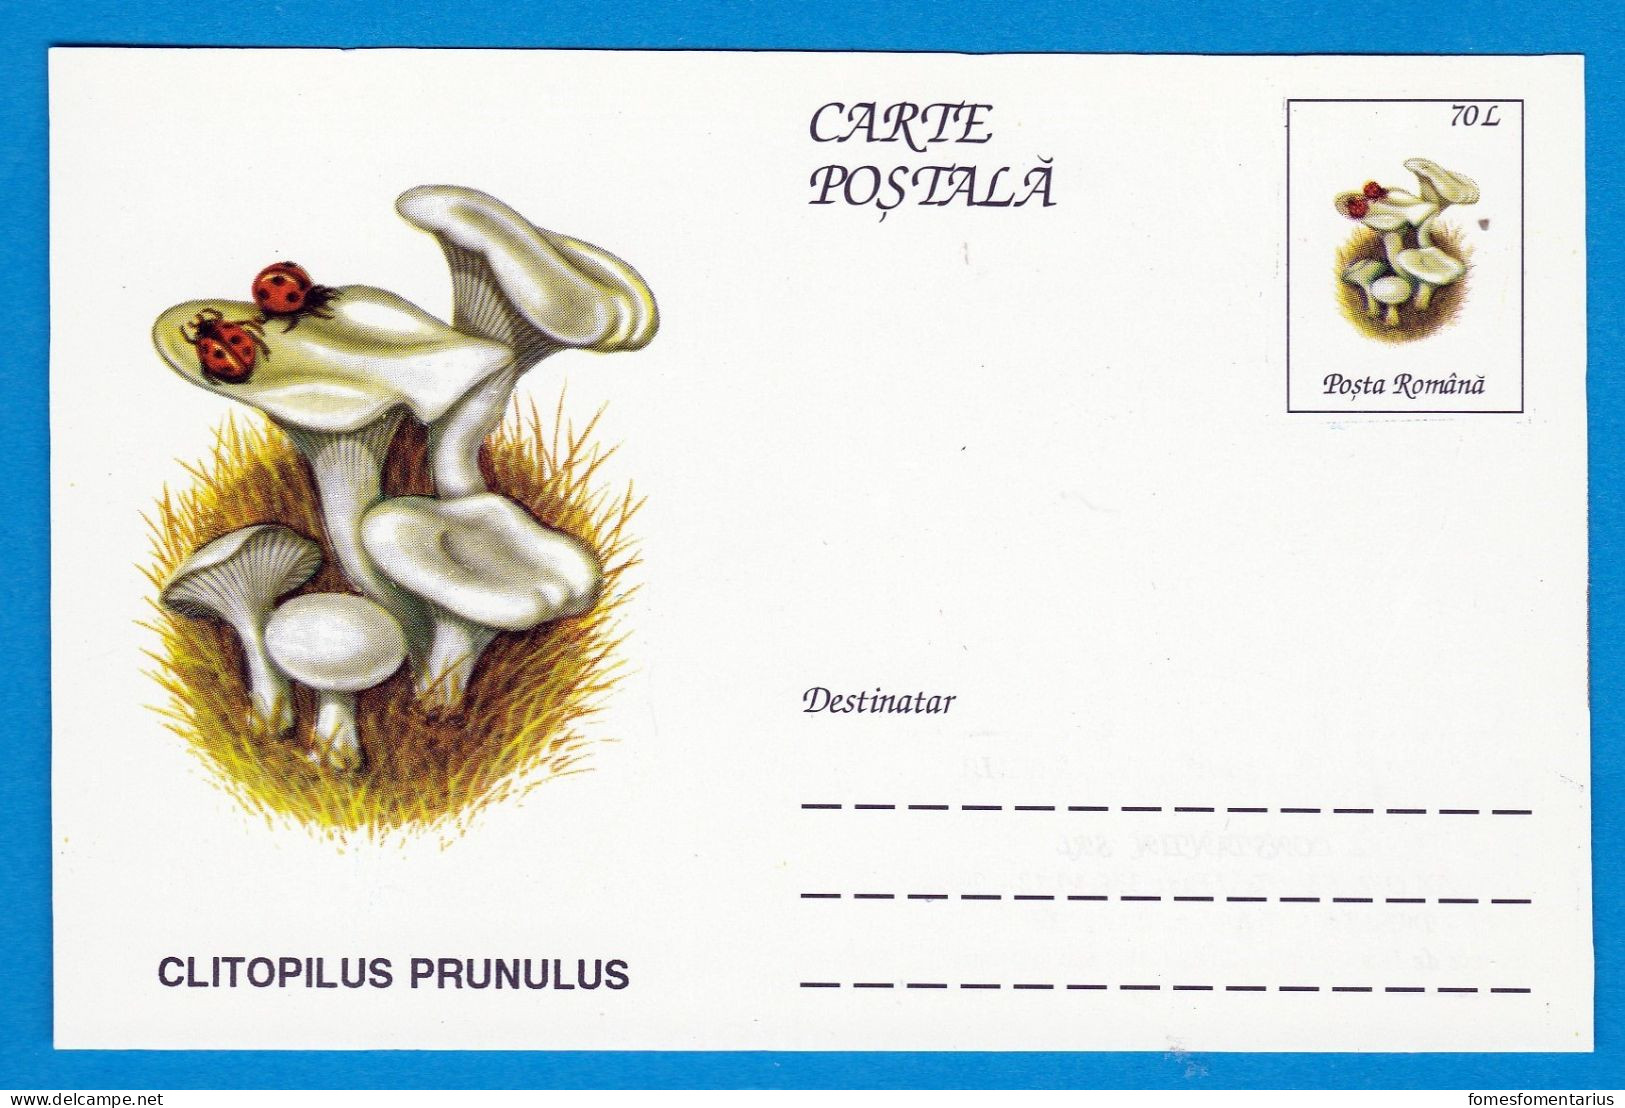 Entier Postal Neuf Roumain édition Luxe Glacé Brillant N° 086 Série 891/1000 Champignon  Mushroom Champignons Pilze - Mushrooms